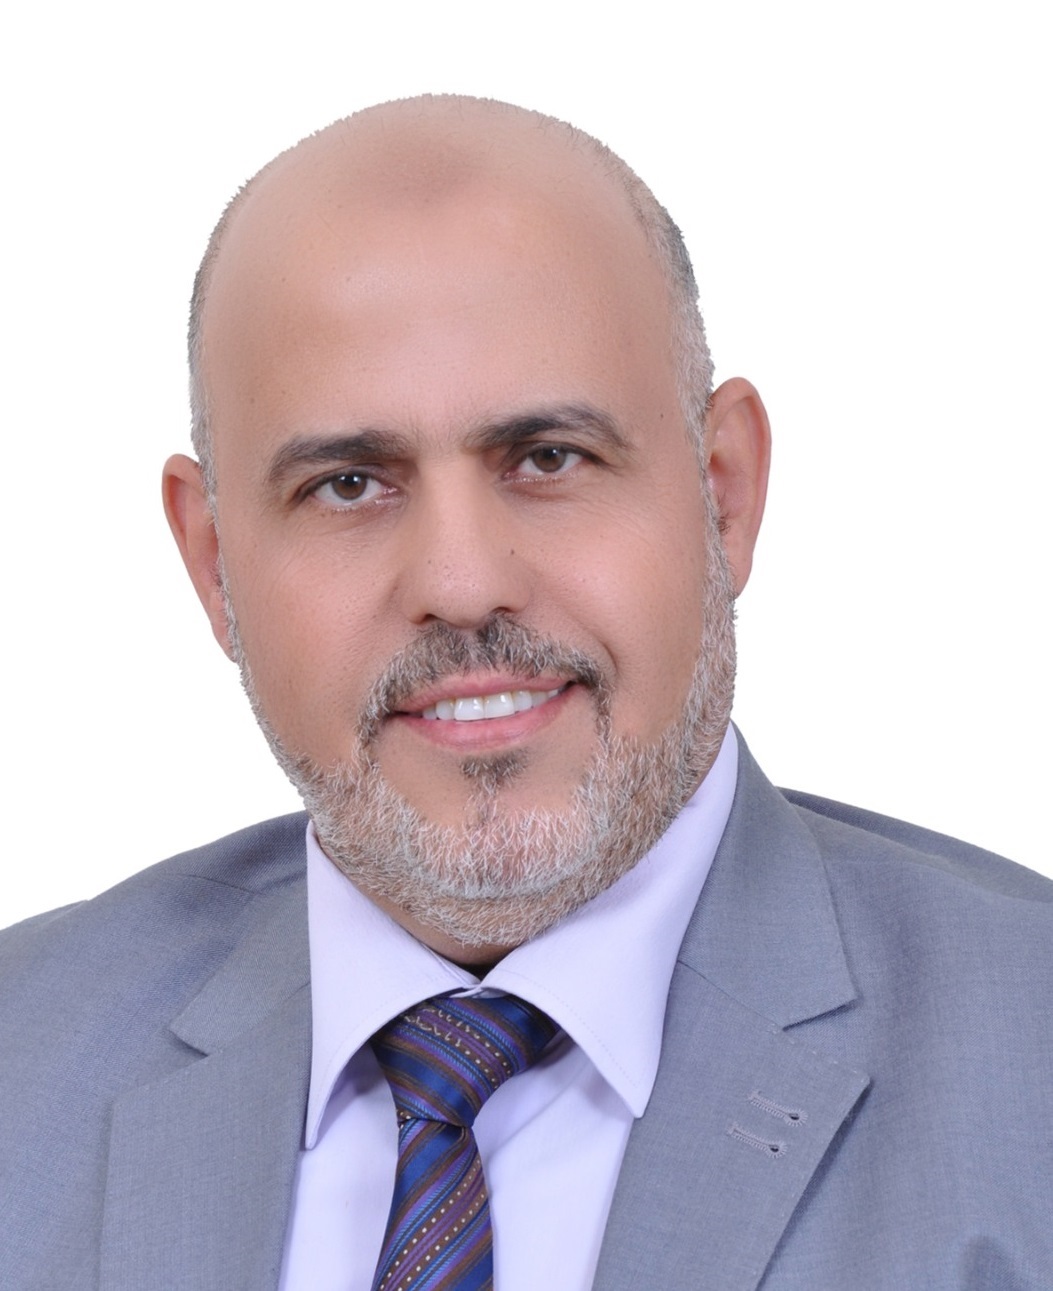 د. أحمد الكيالي: التوعية والتثقيف أداة مهمة في الدفاع عن قضيتنا الفلسطينية